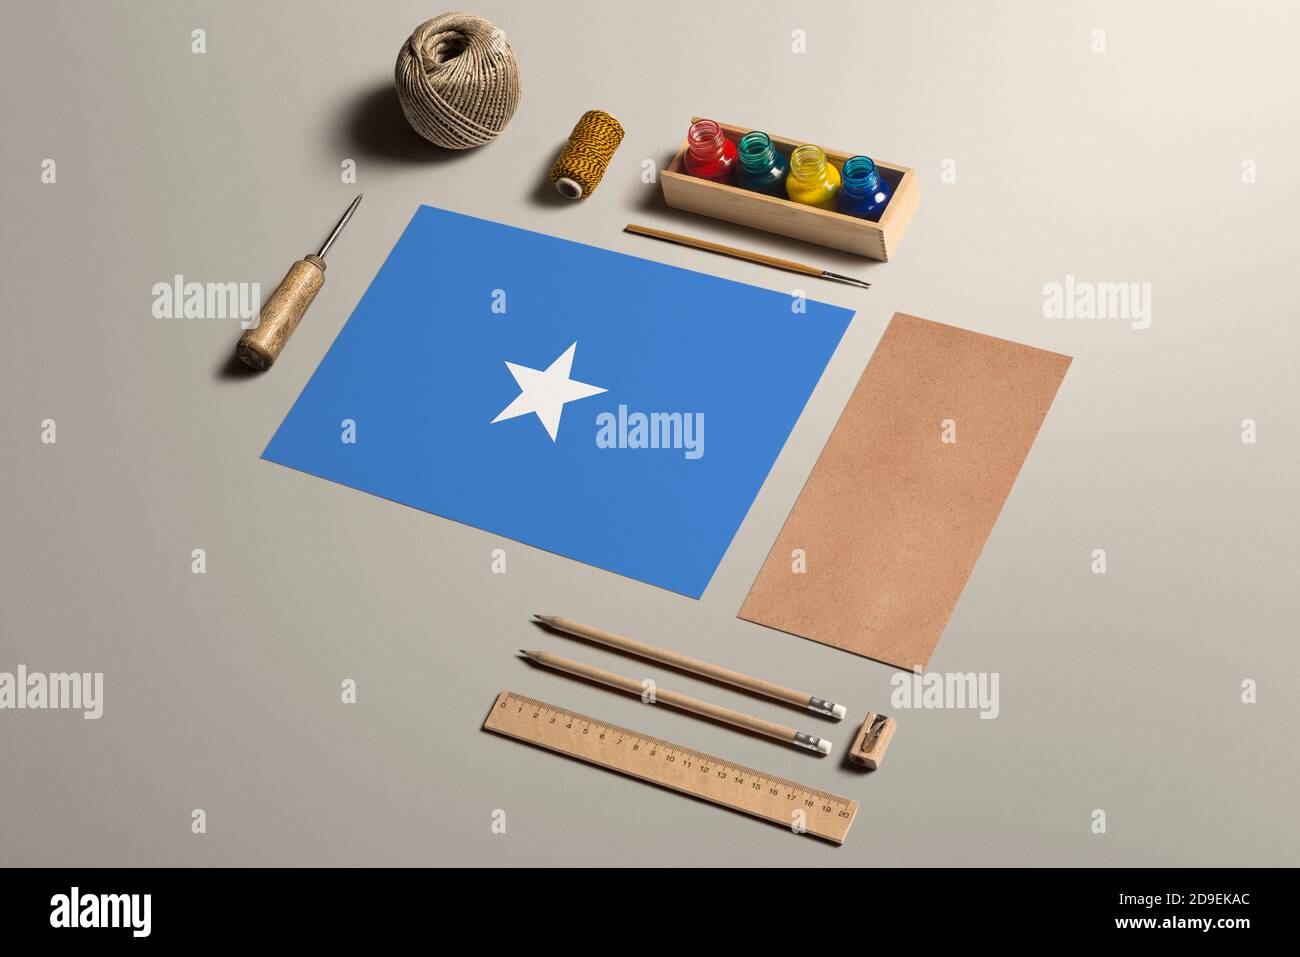 Somalia Kalligraphie Konzept, Zubehör und Werkzeuge für schöne Handschrift, Bleistifte, Stifte, Tinte, Pinsel, Bastelpapier und Pappe Handwerk auf Holz Stockfoto